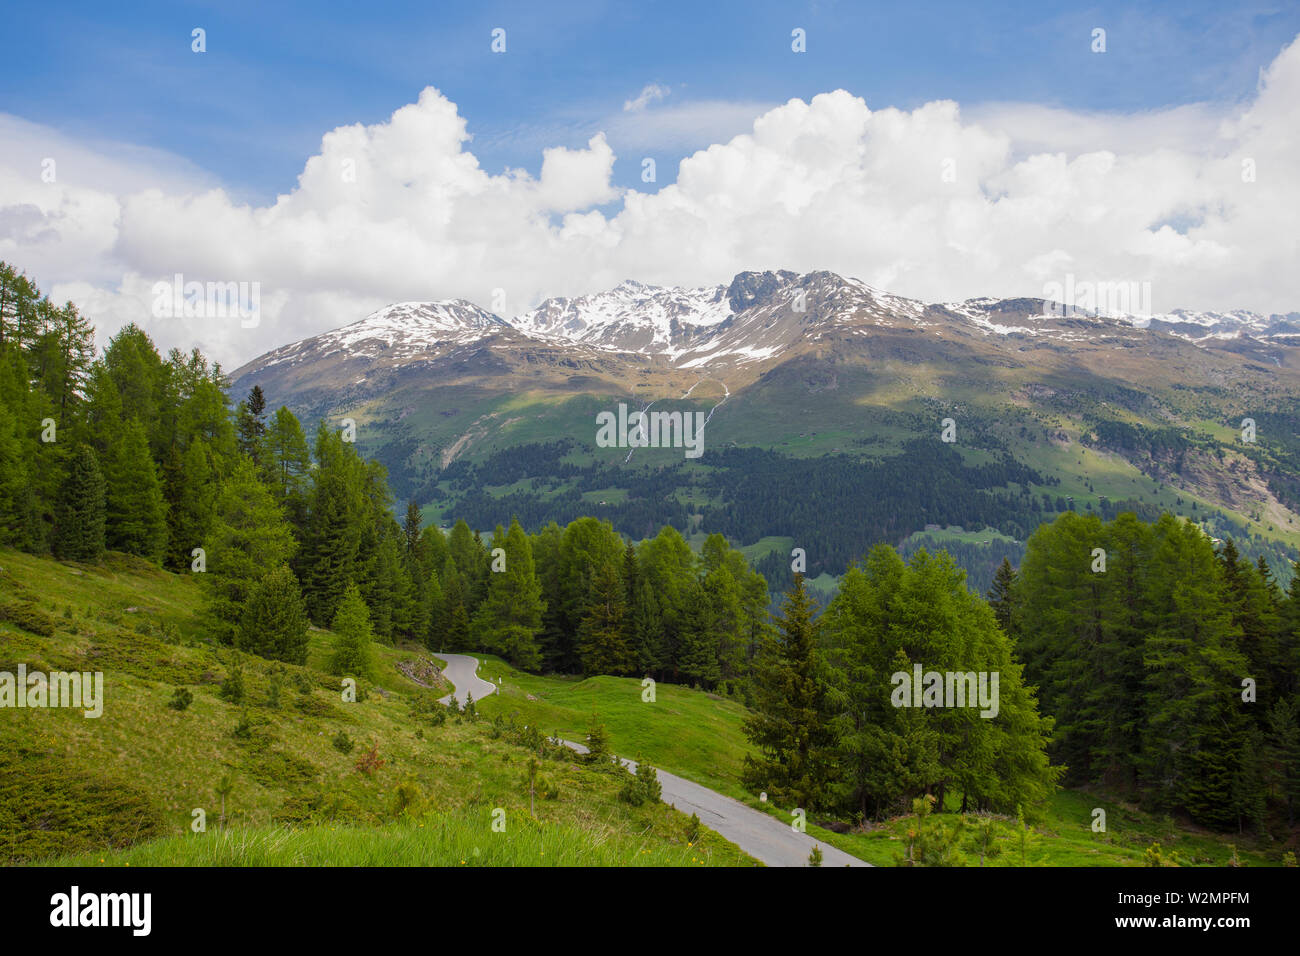 Vista dal Passo Gavia, un valico alpino del sud delle Alpi Retiche, segna il confine amministrativo tra le province di Sondrio e Brescia Foto Stock